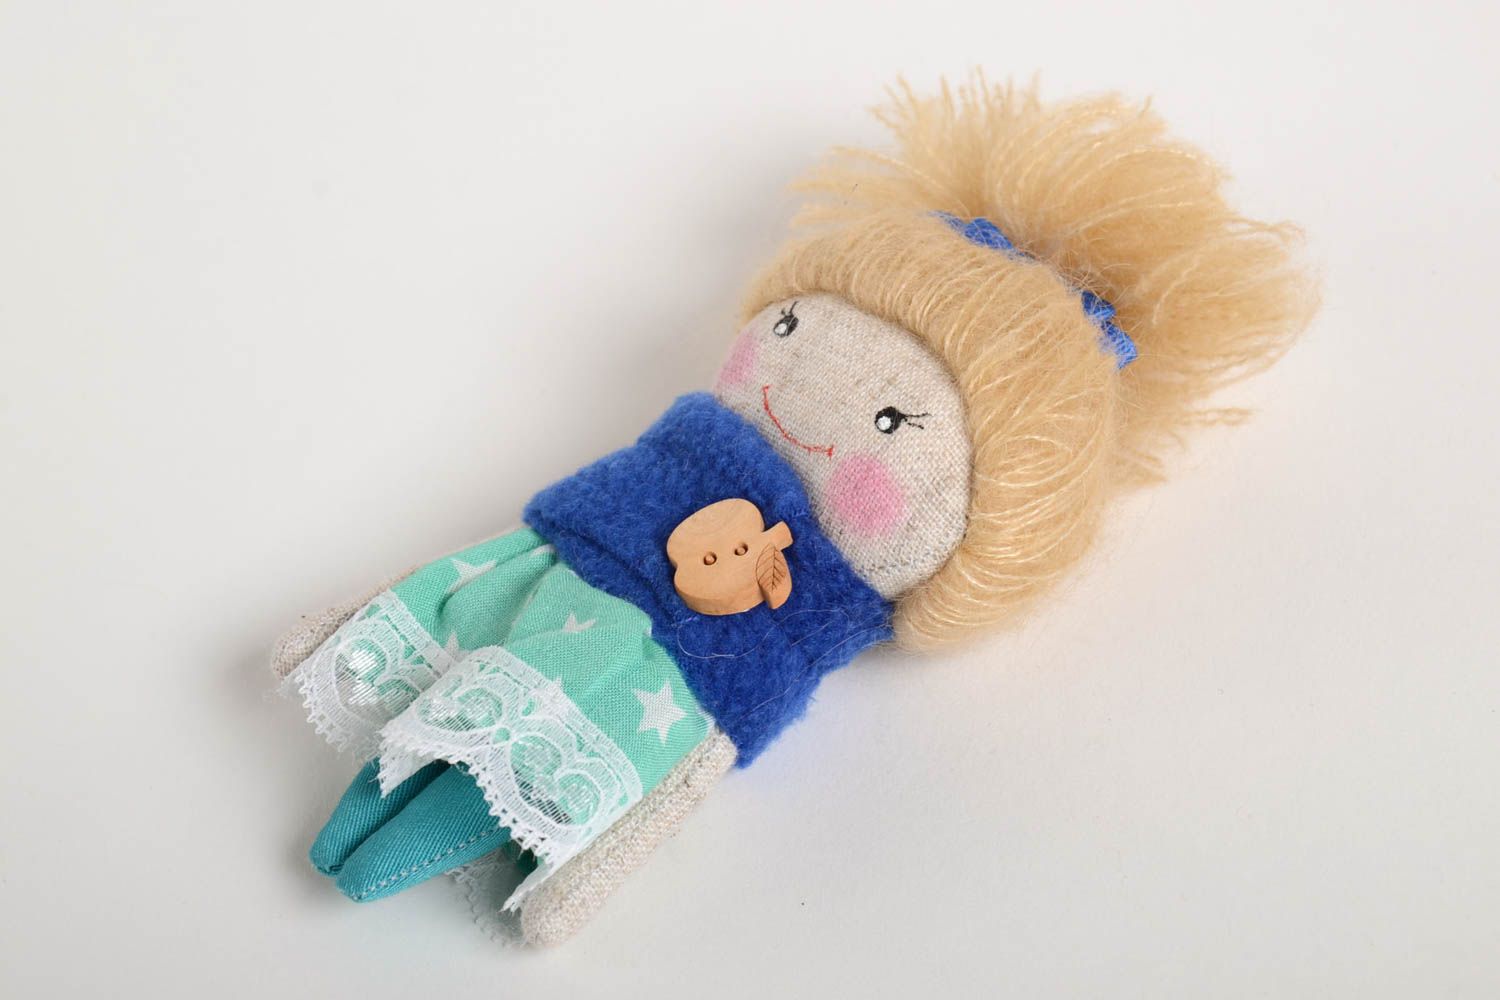 Handmade doll for children interior toys nursery decor present for girl photo 3